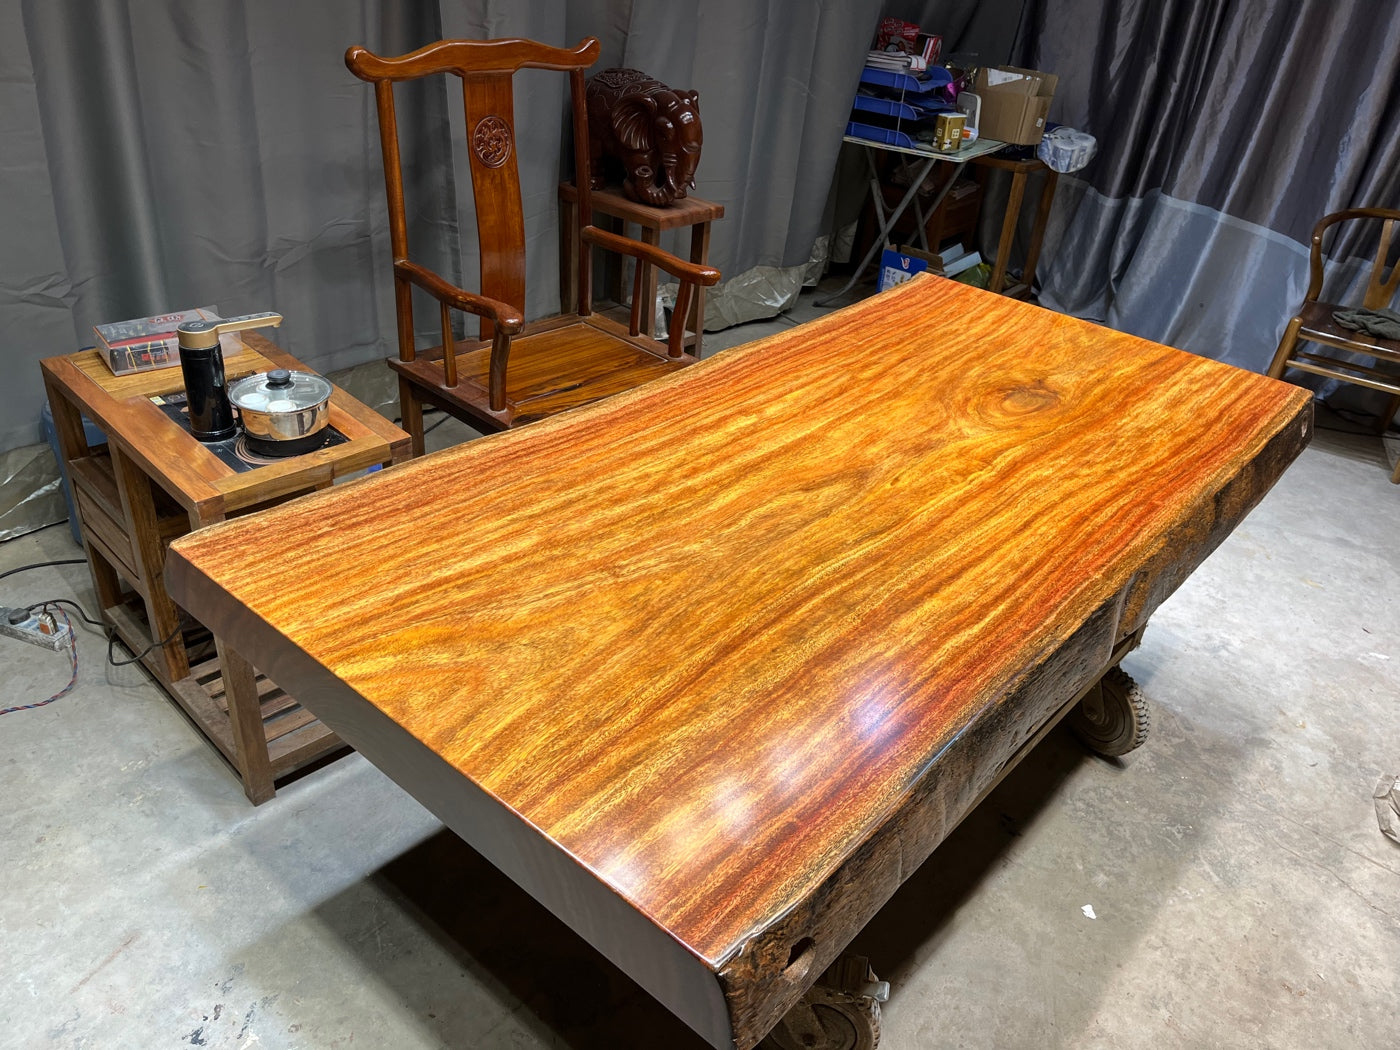 بلاطة لسطح الطاولة، وطاولة لوح الرماد، وتصميمات قاعدة طاولة بلاطة، وشريط طاولة بلاطة